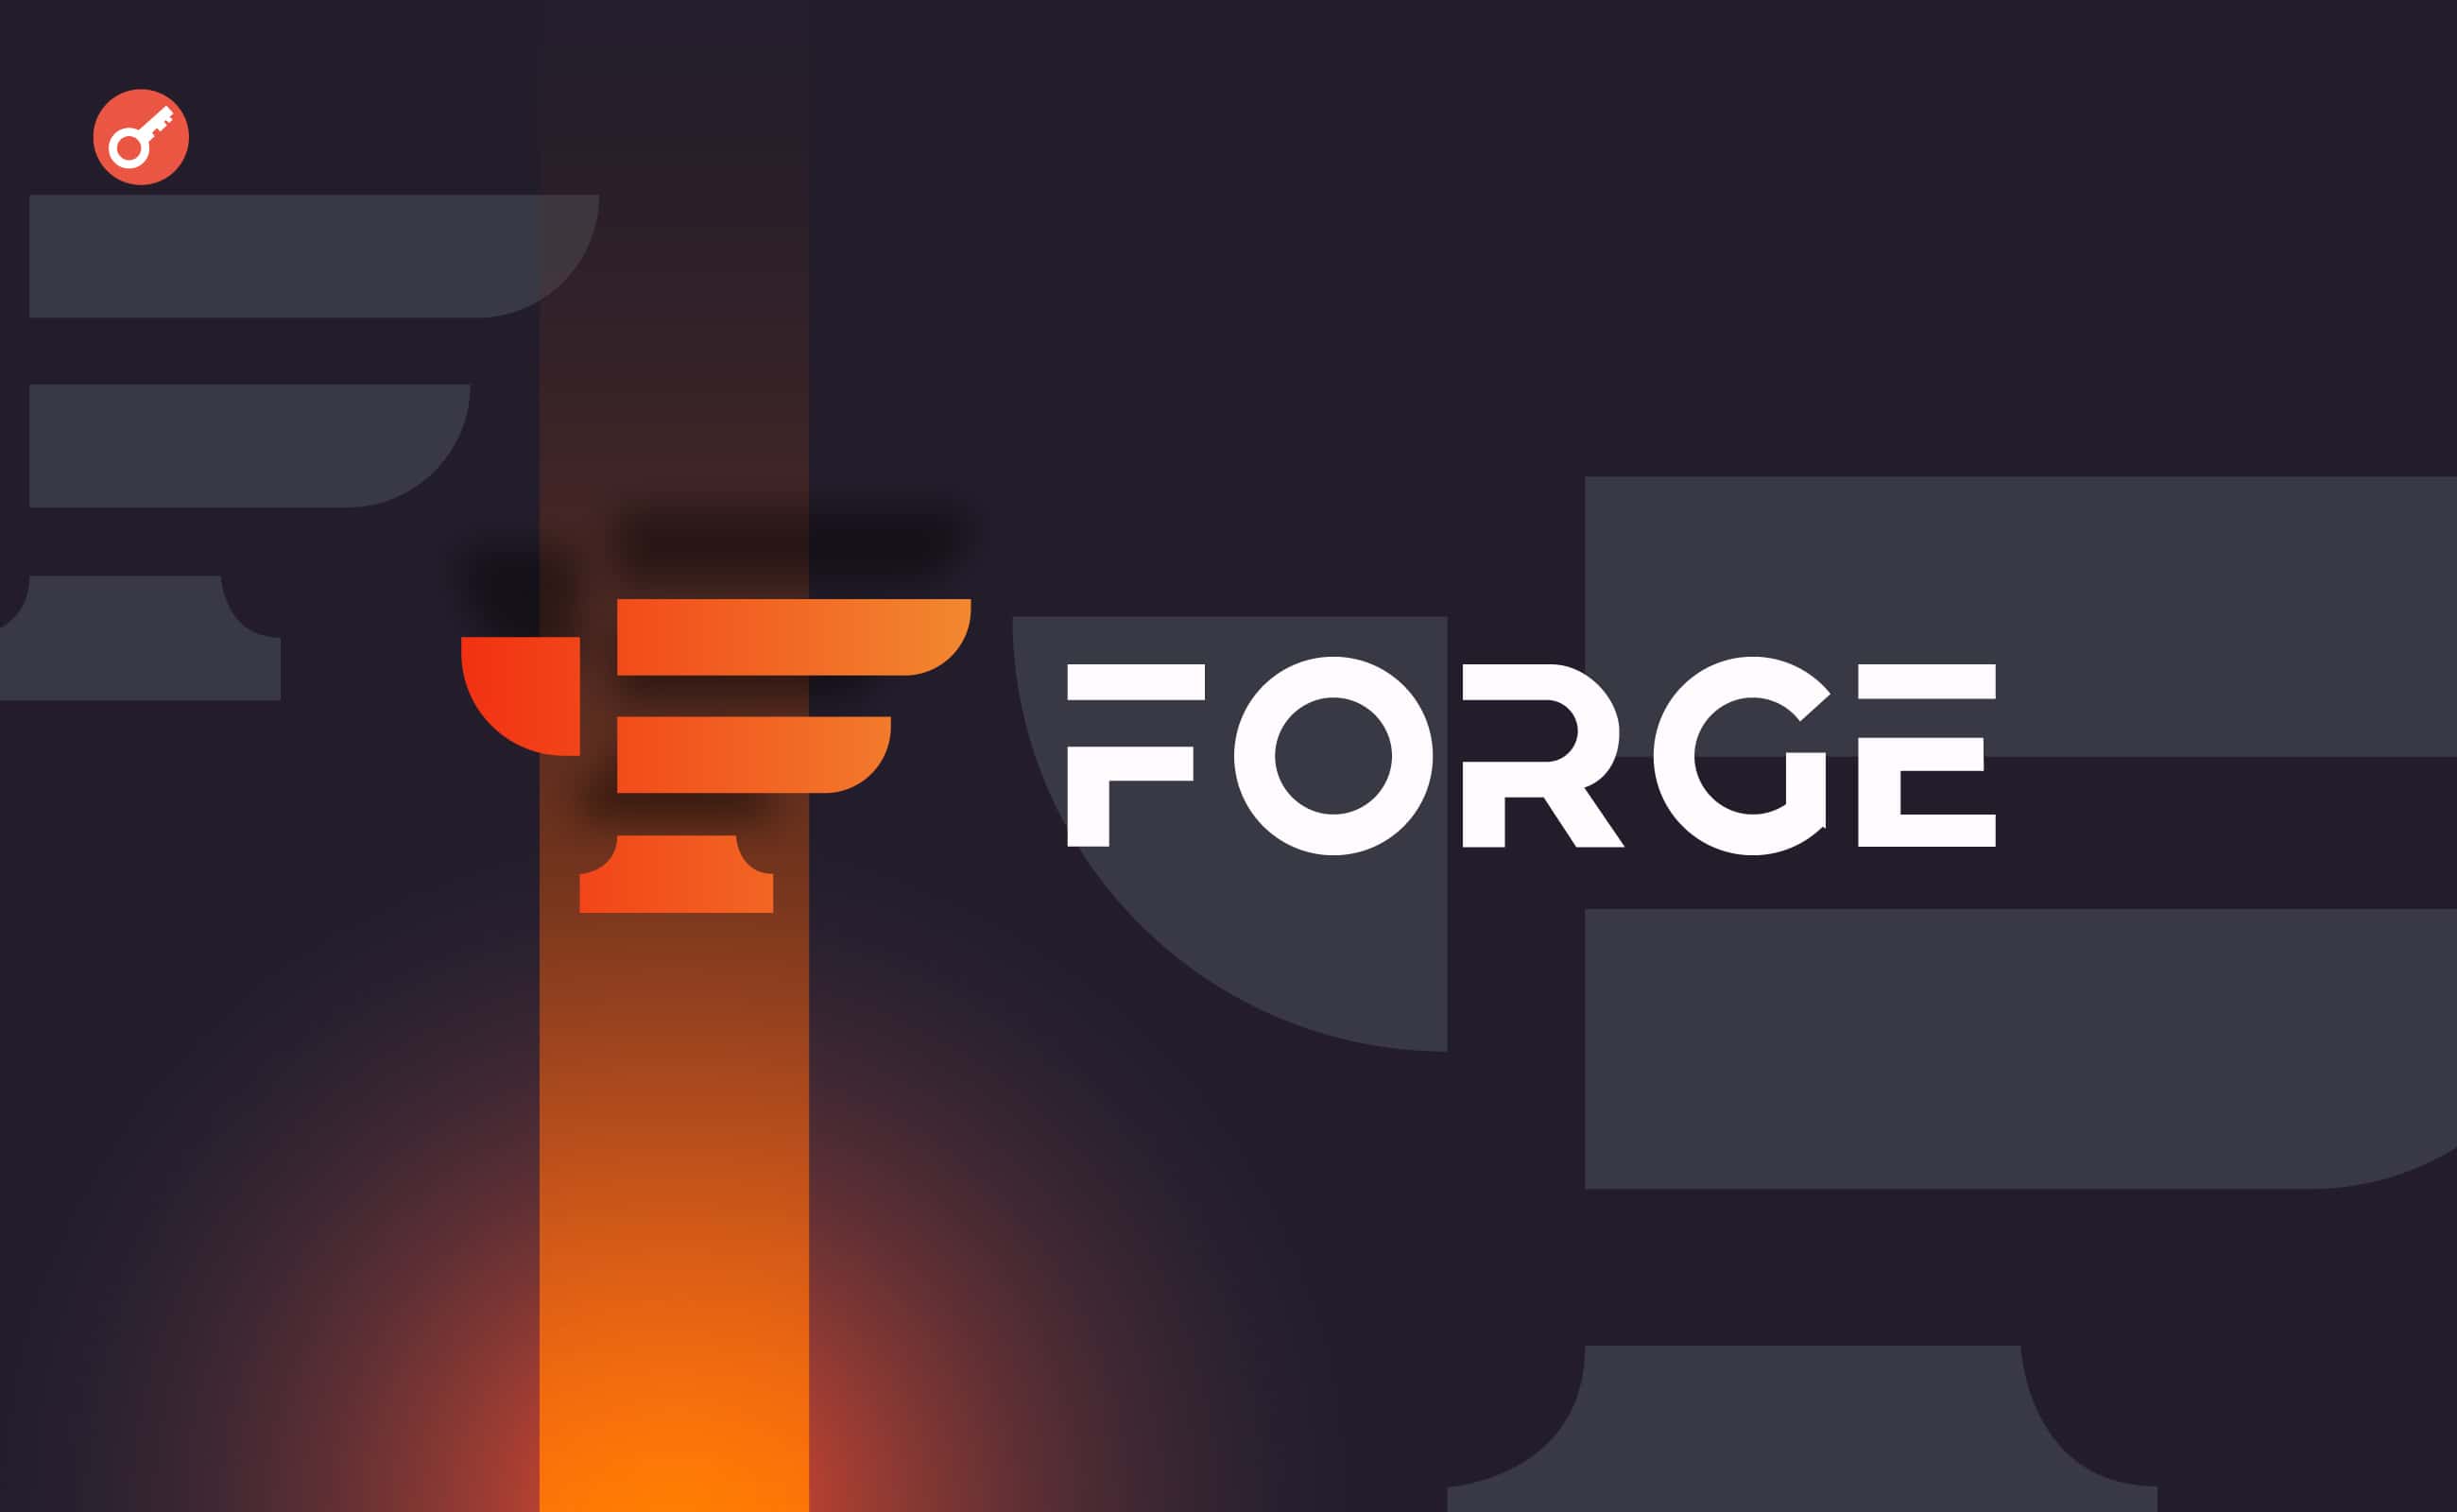 Игровая платформа Forge привлекла $11 млн инвестиций. Заглавный коллаж новости.